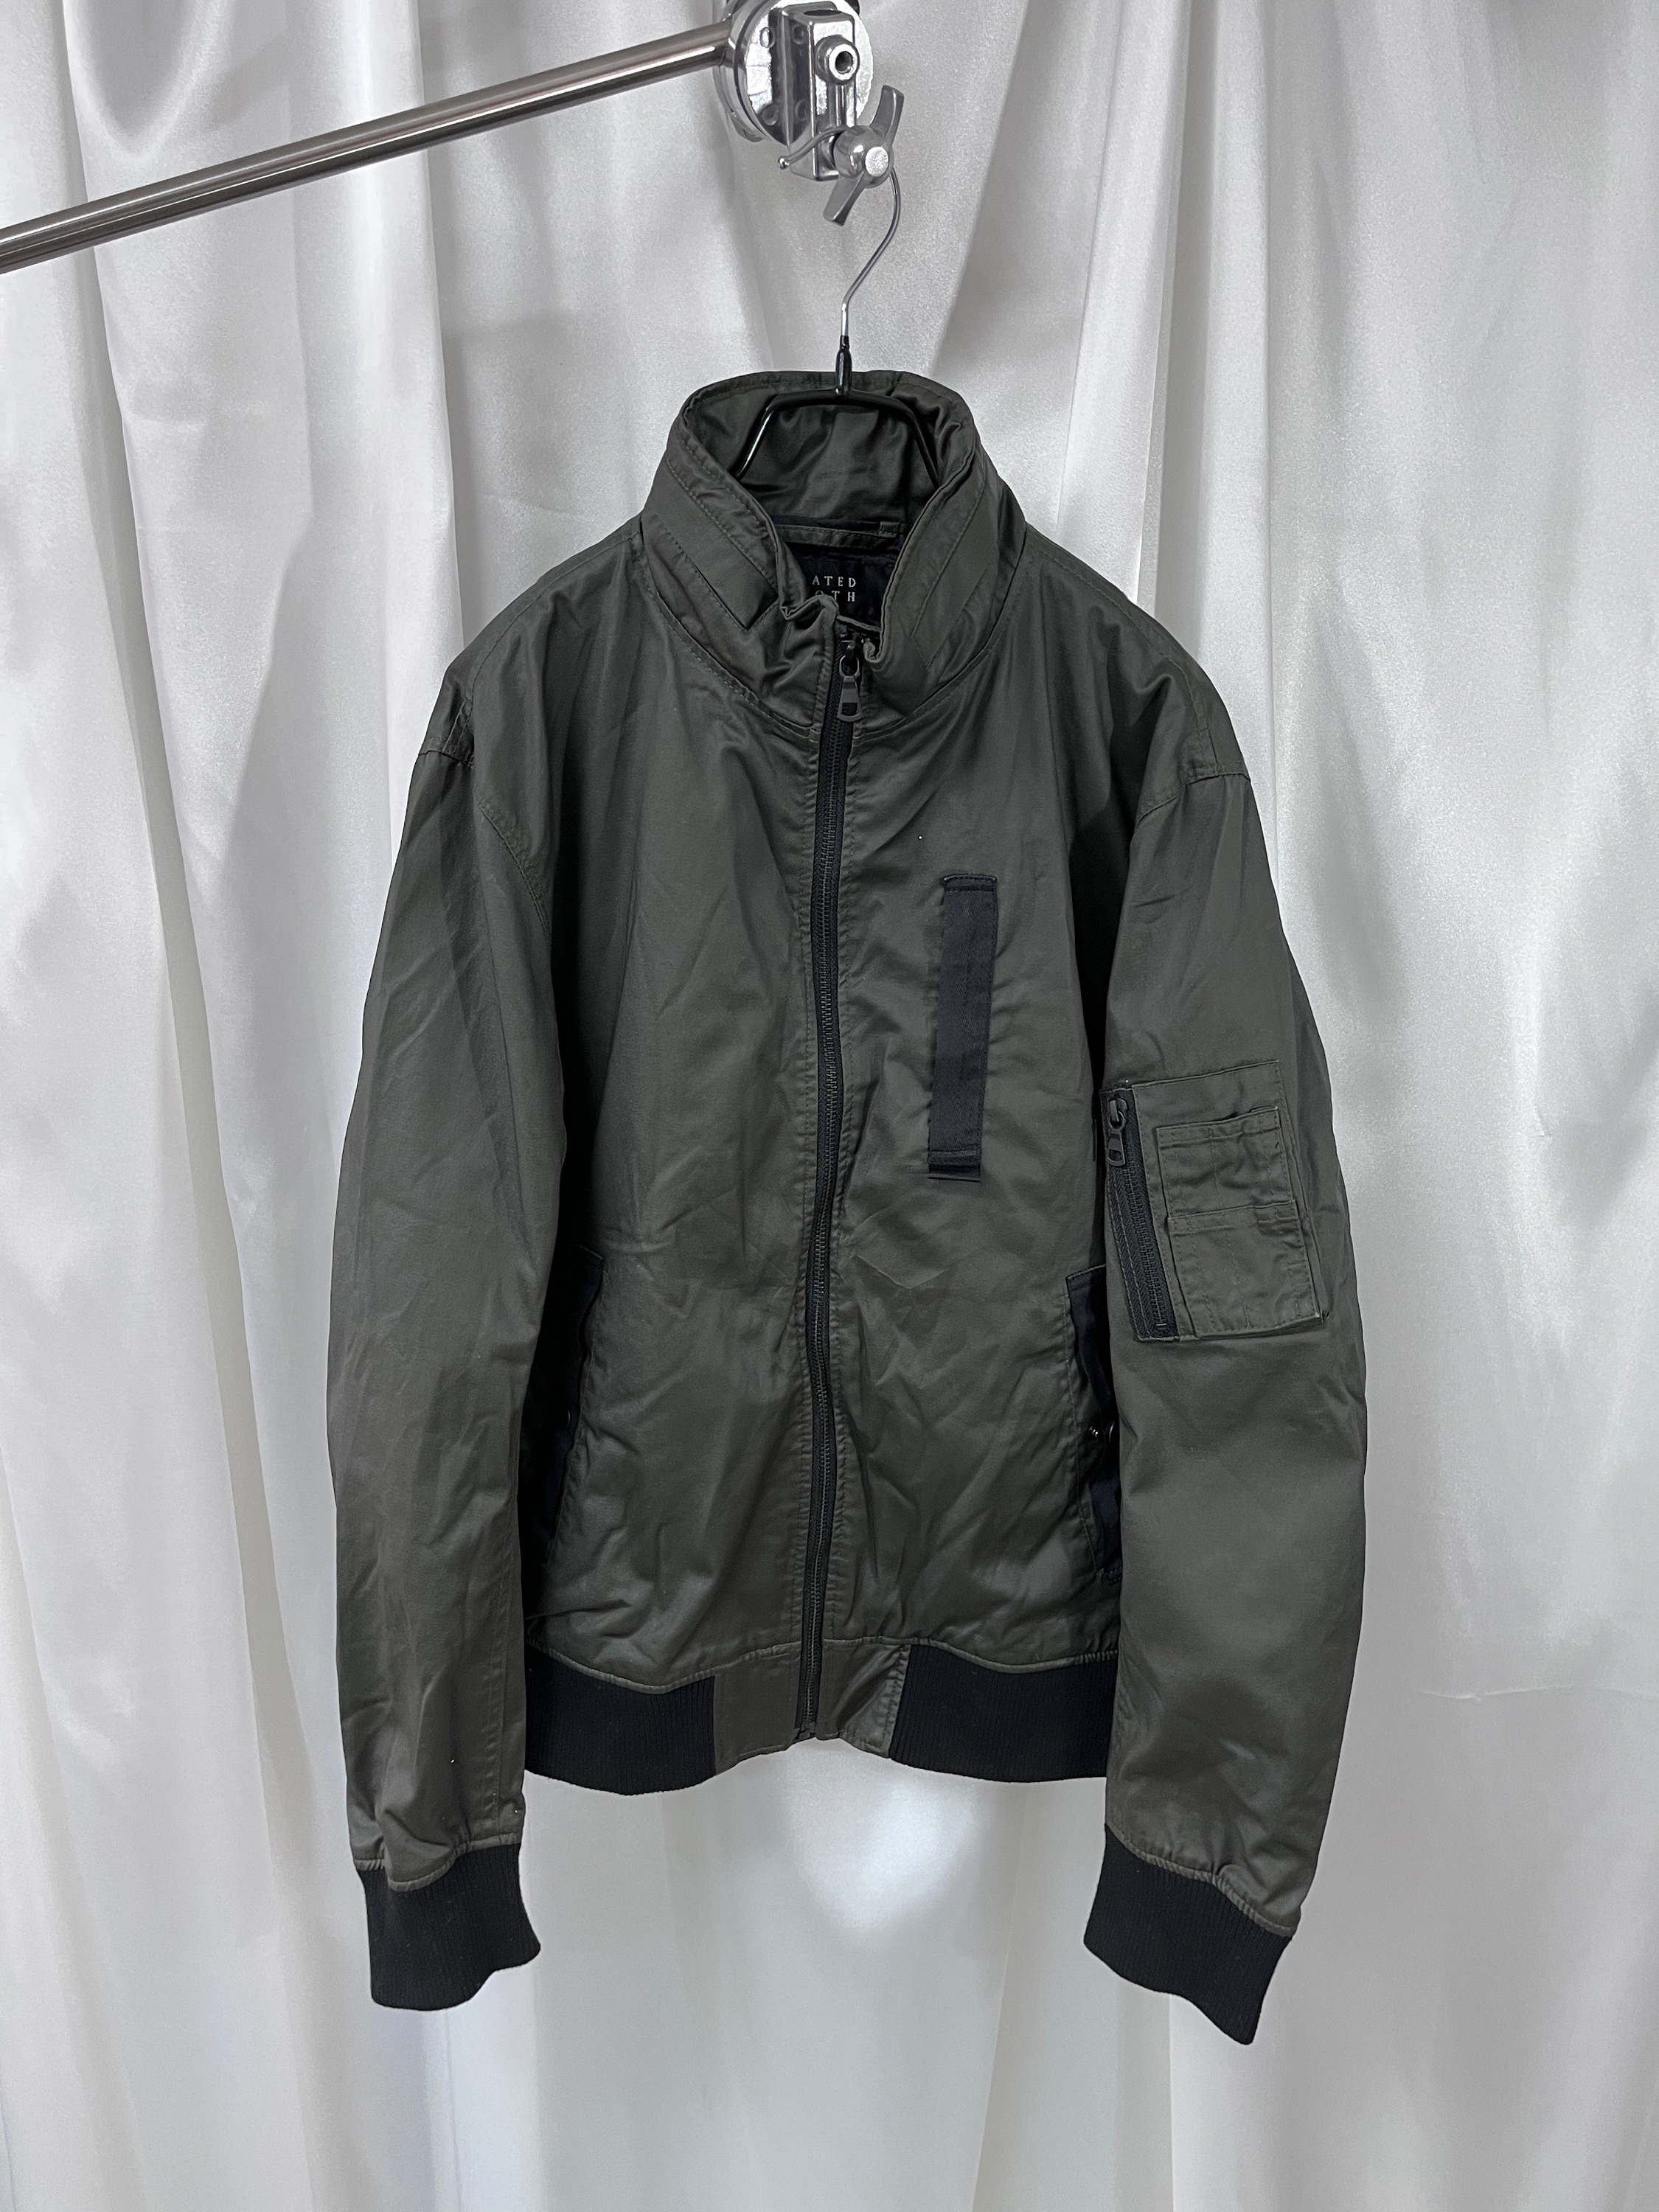 uniqlo coated jacket (L)